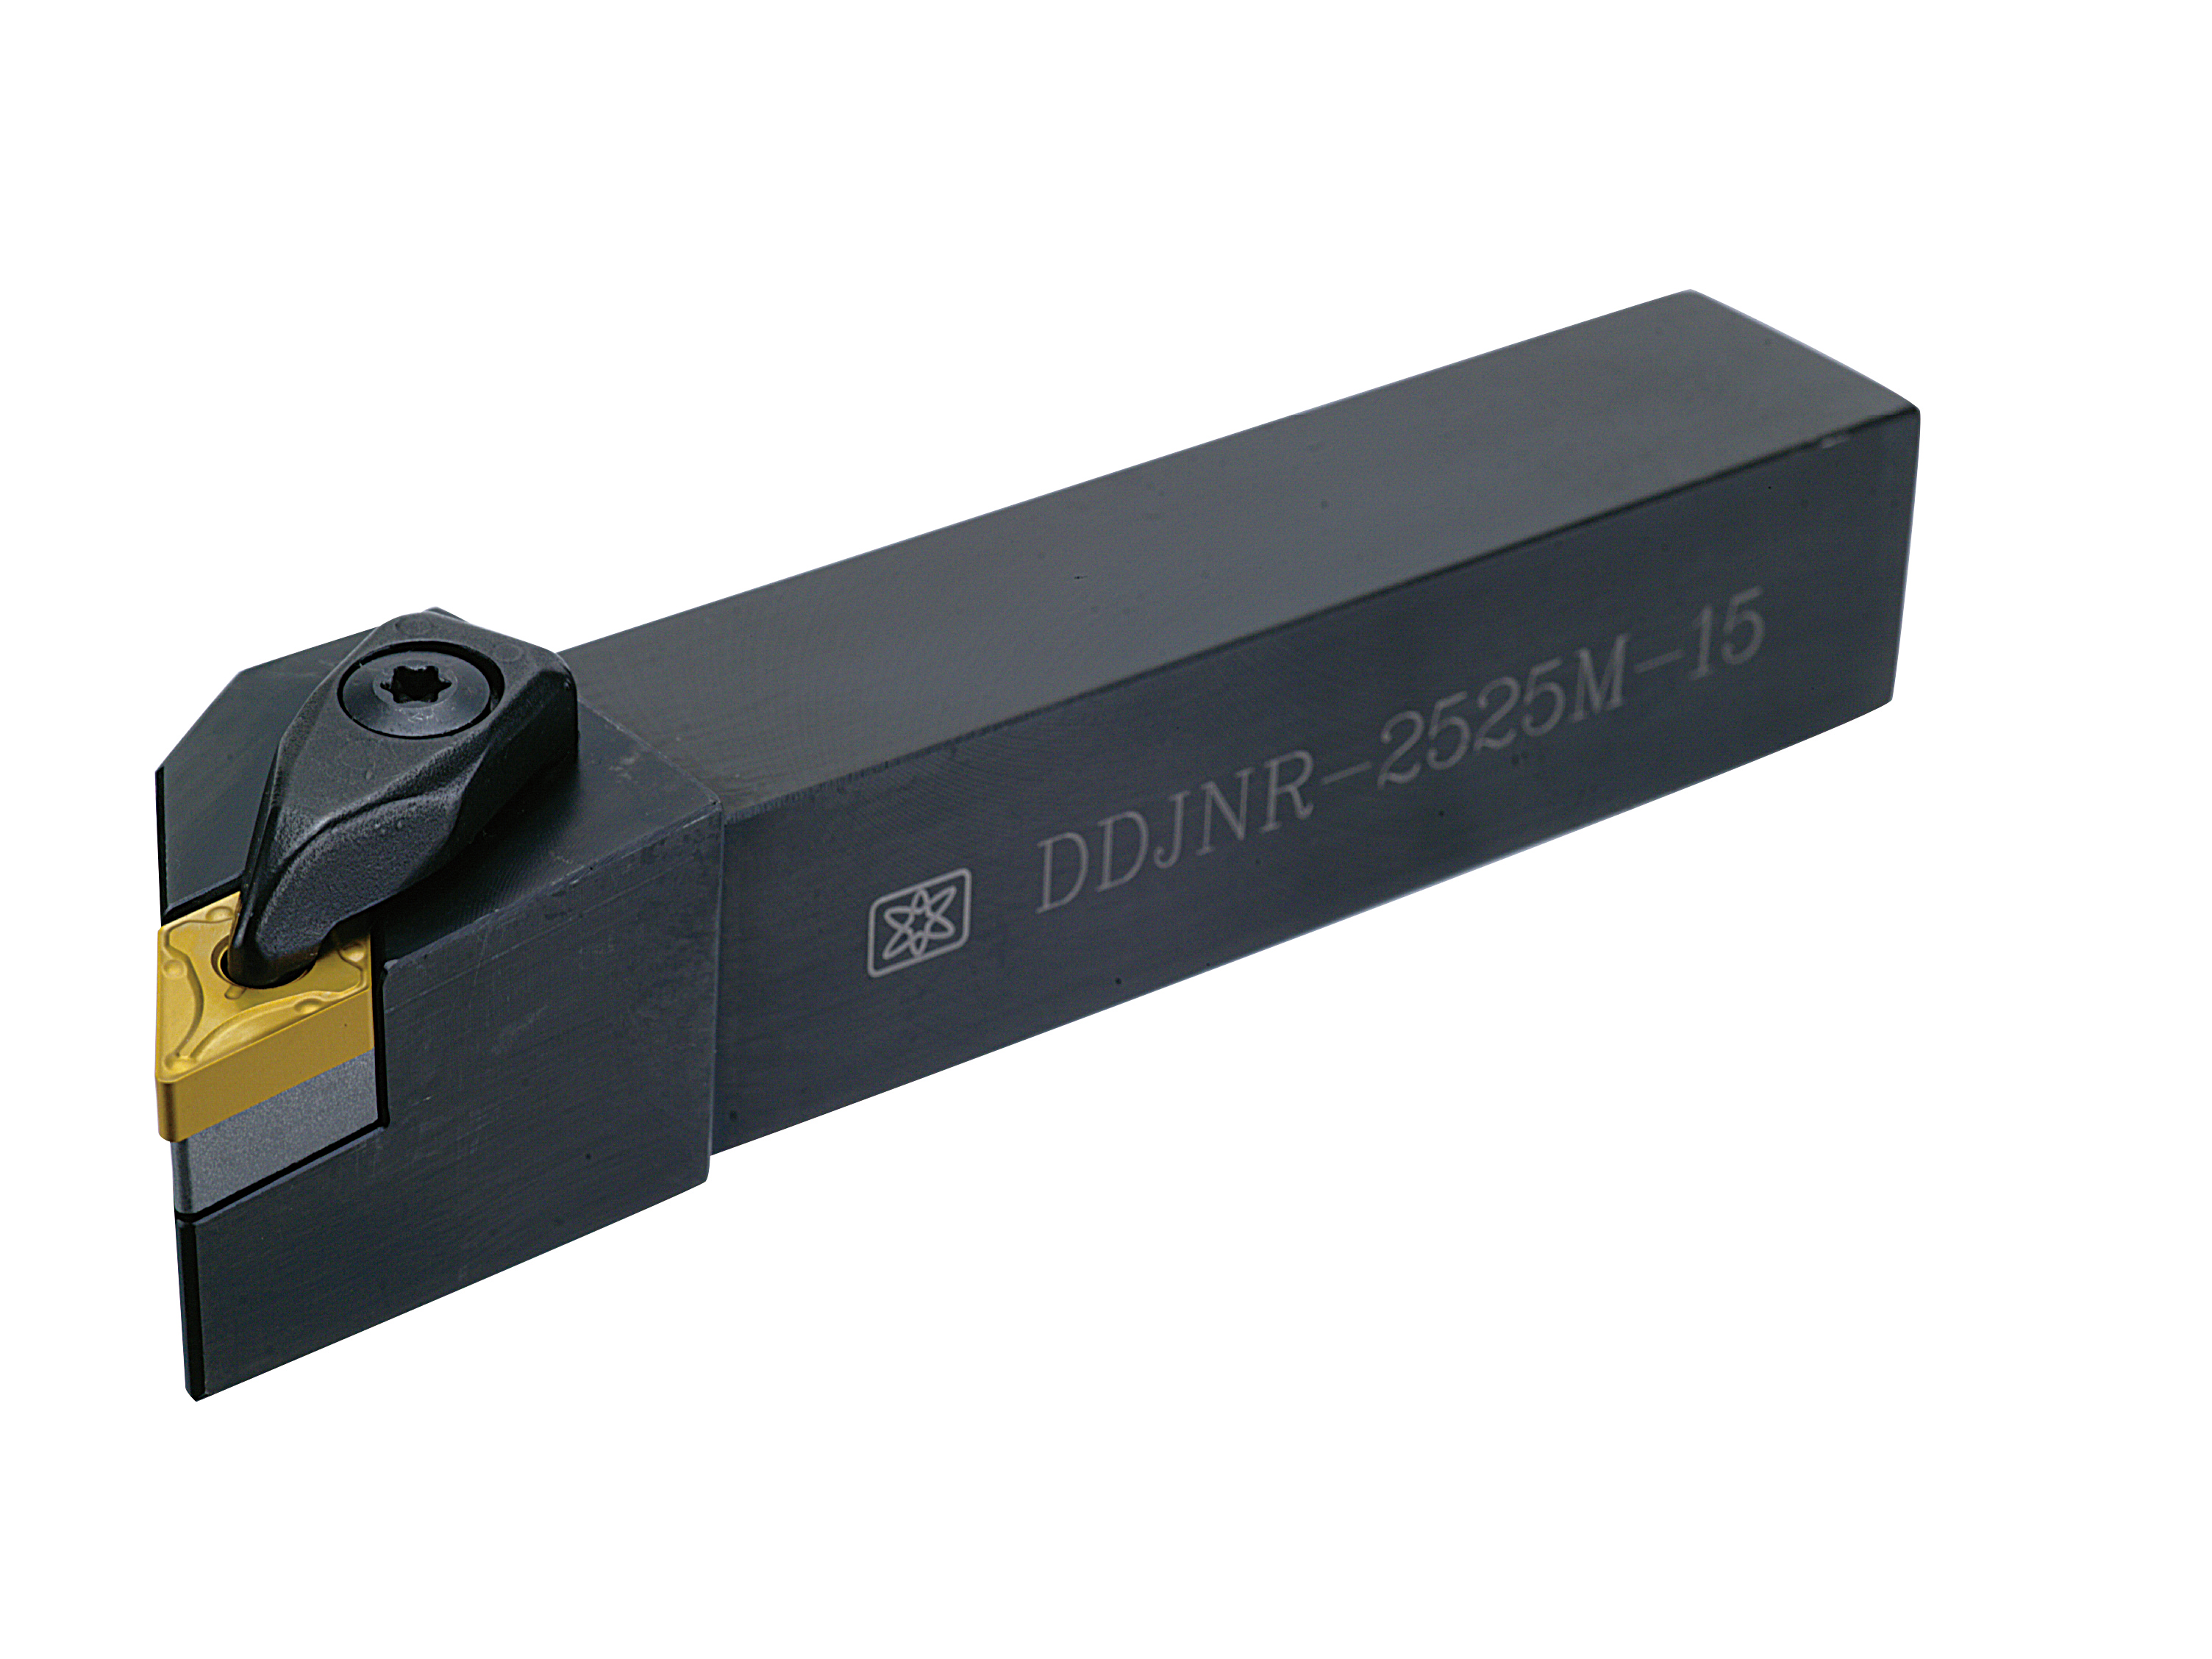 Catalog|DDJNR (DNMG1504 / DNMG1506) External Turning Tool Holder